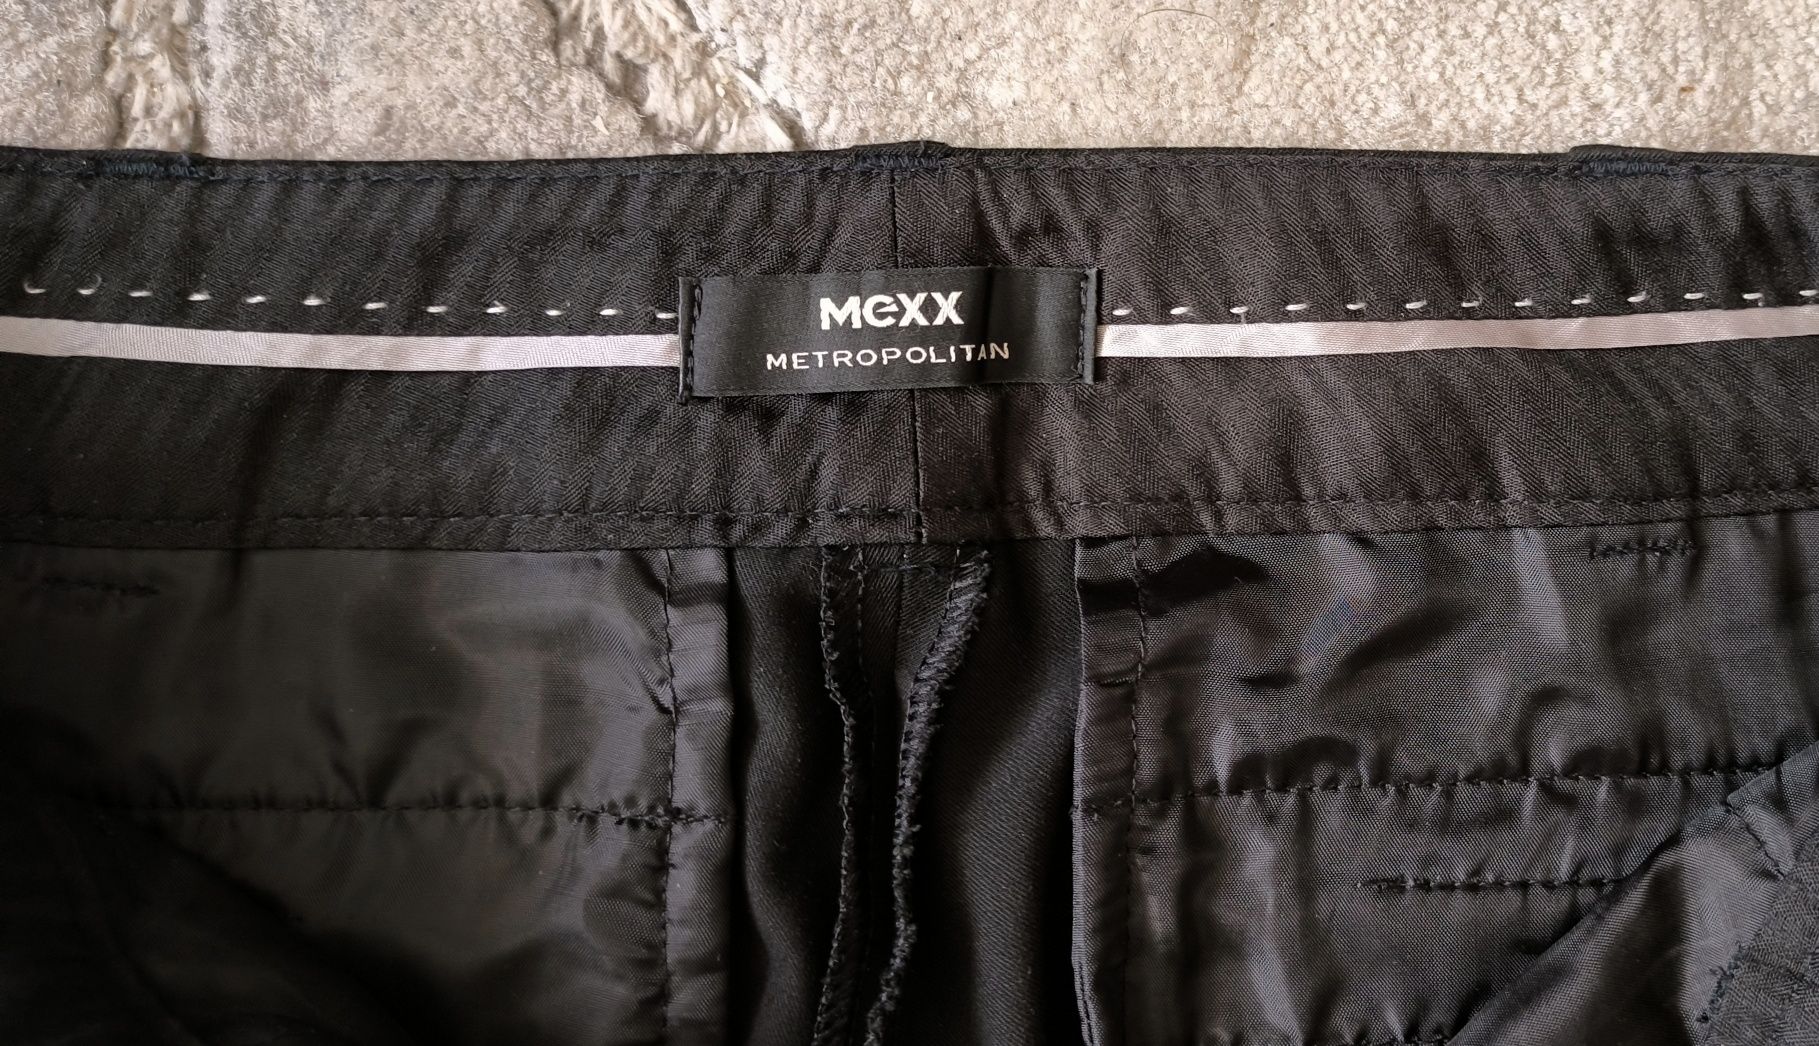 Spodnie damskie klasyczne Mexx, rozmiar S (36)